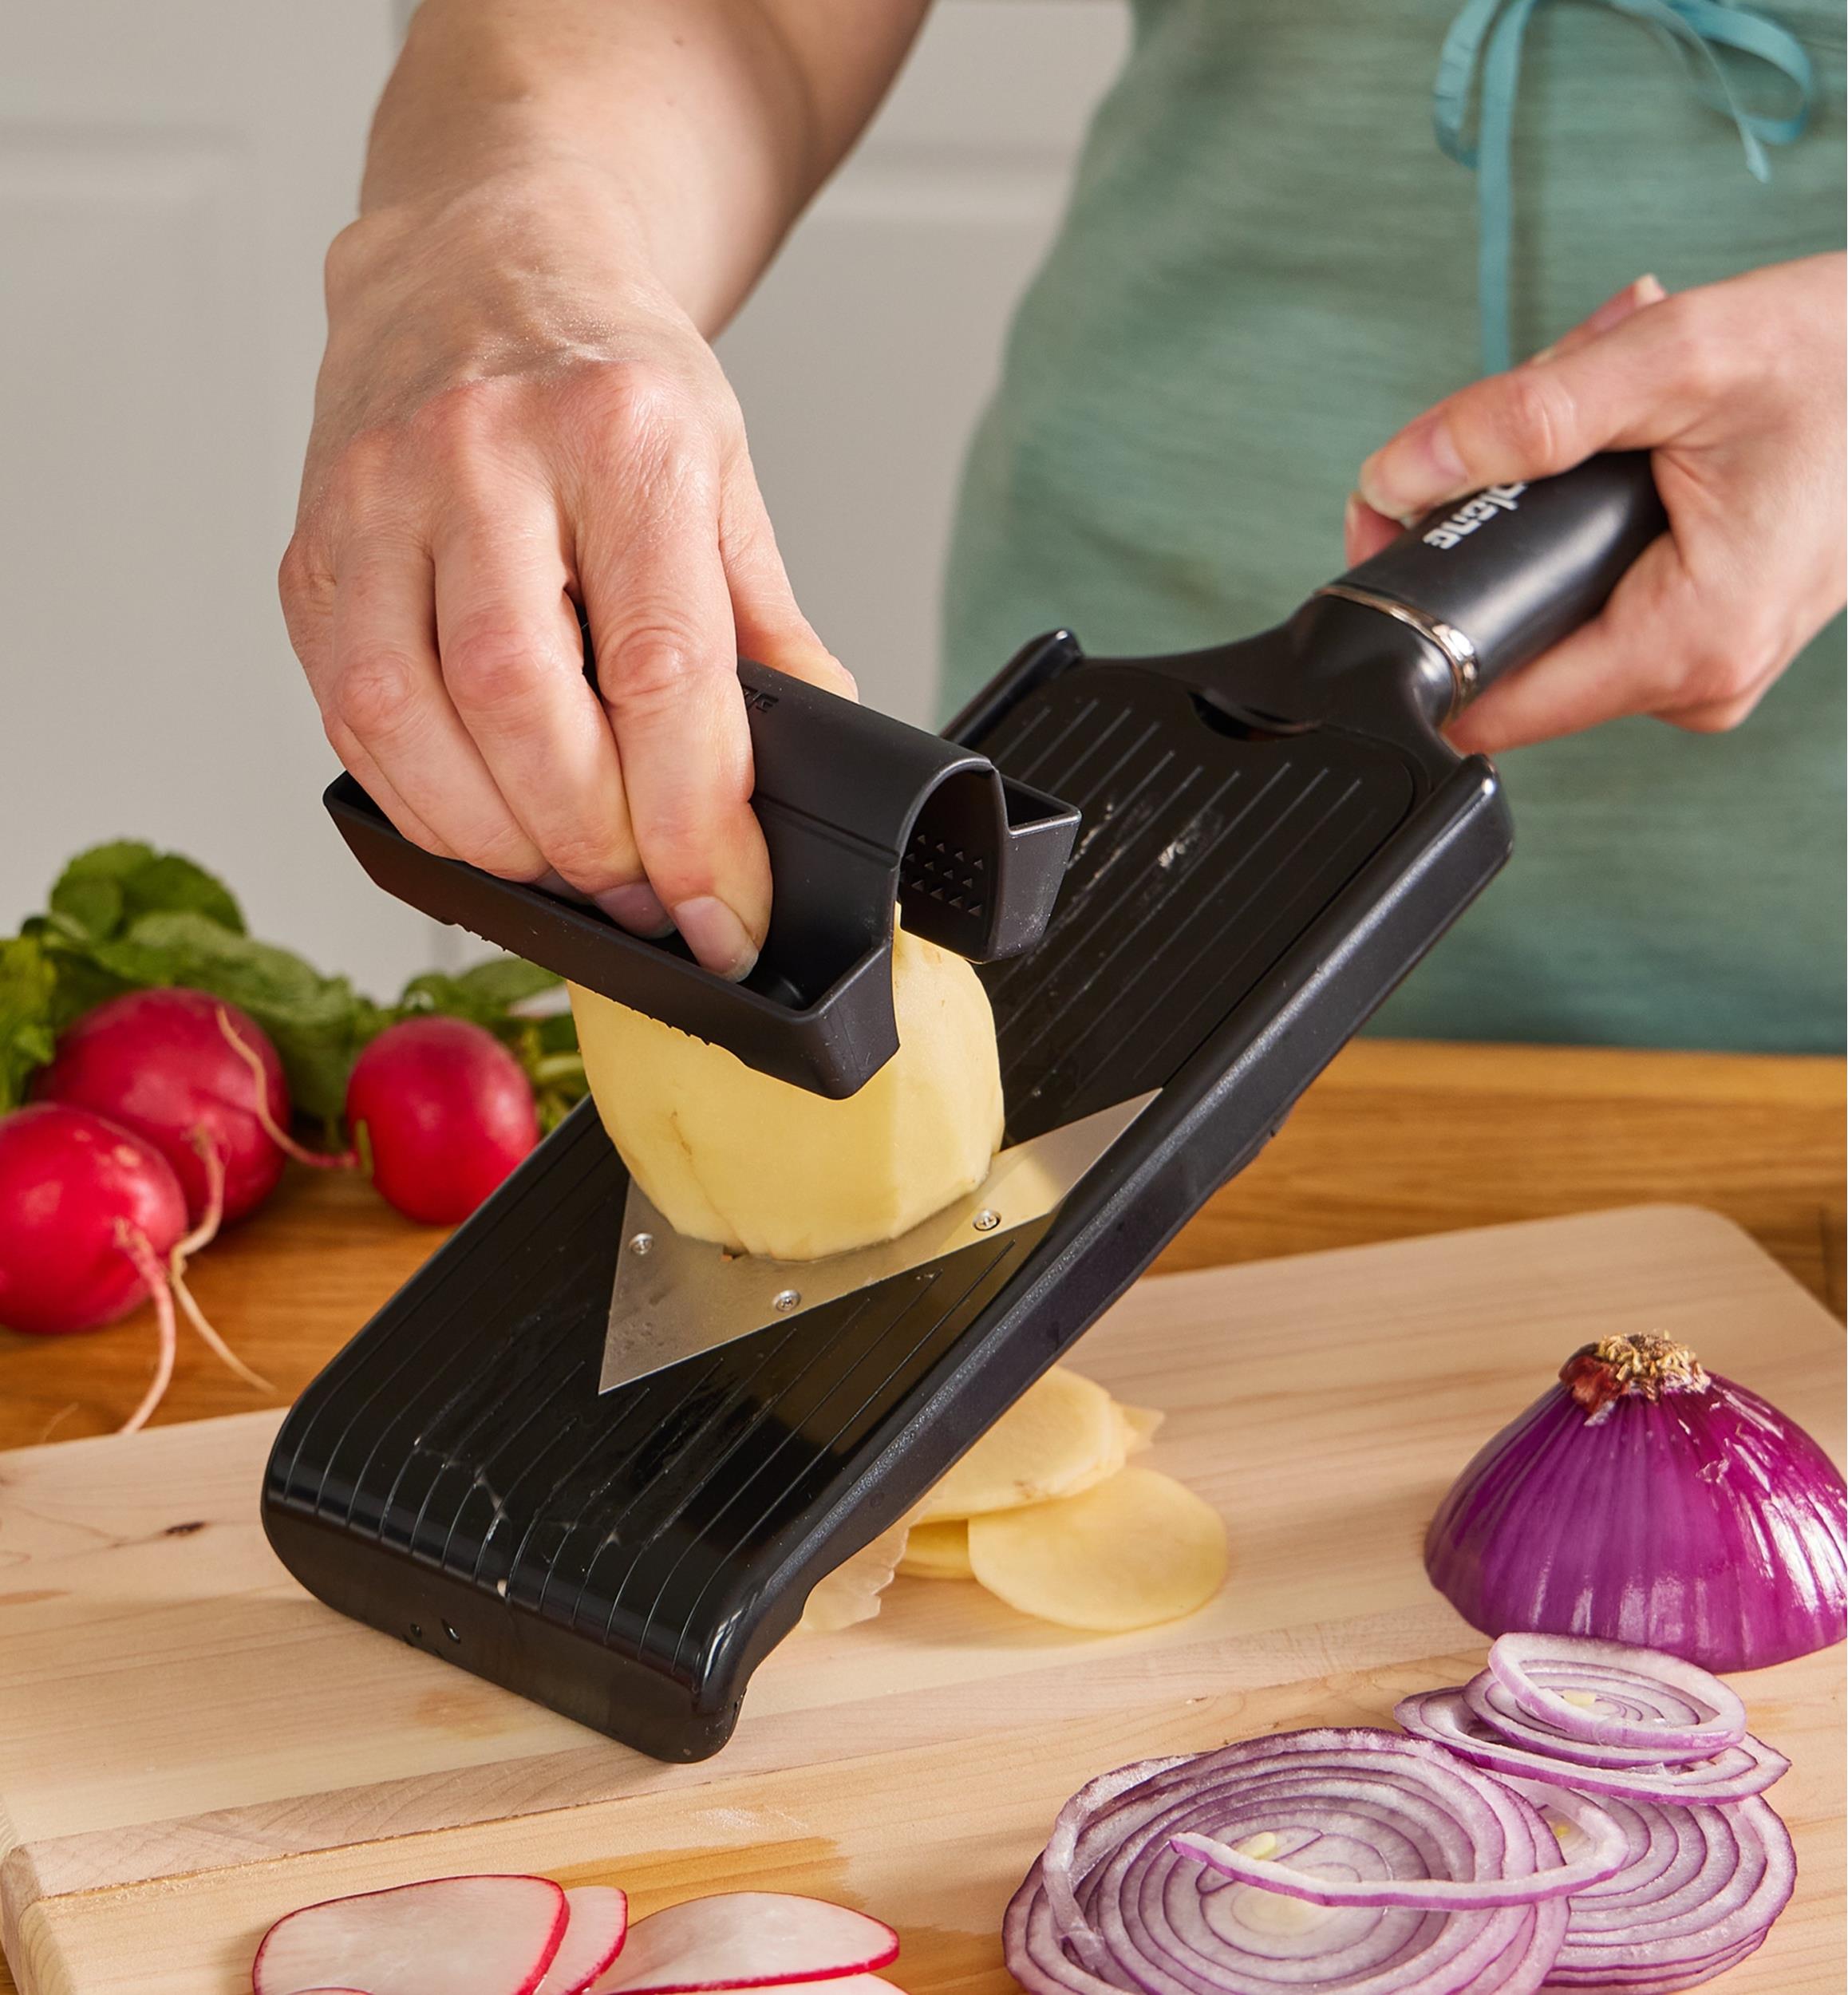 Mandolin Slicer For Kitchen And Vegetable Chopper, Adjustable Thickness  Safe Julienne & Food Slicer, Veggie Slicer For  Fruit/potato/cucumber/onion/me